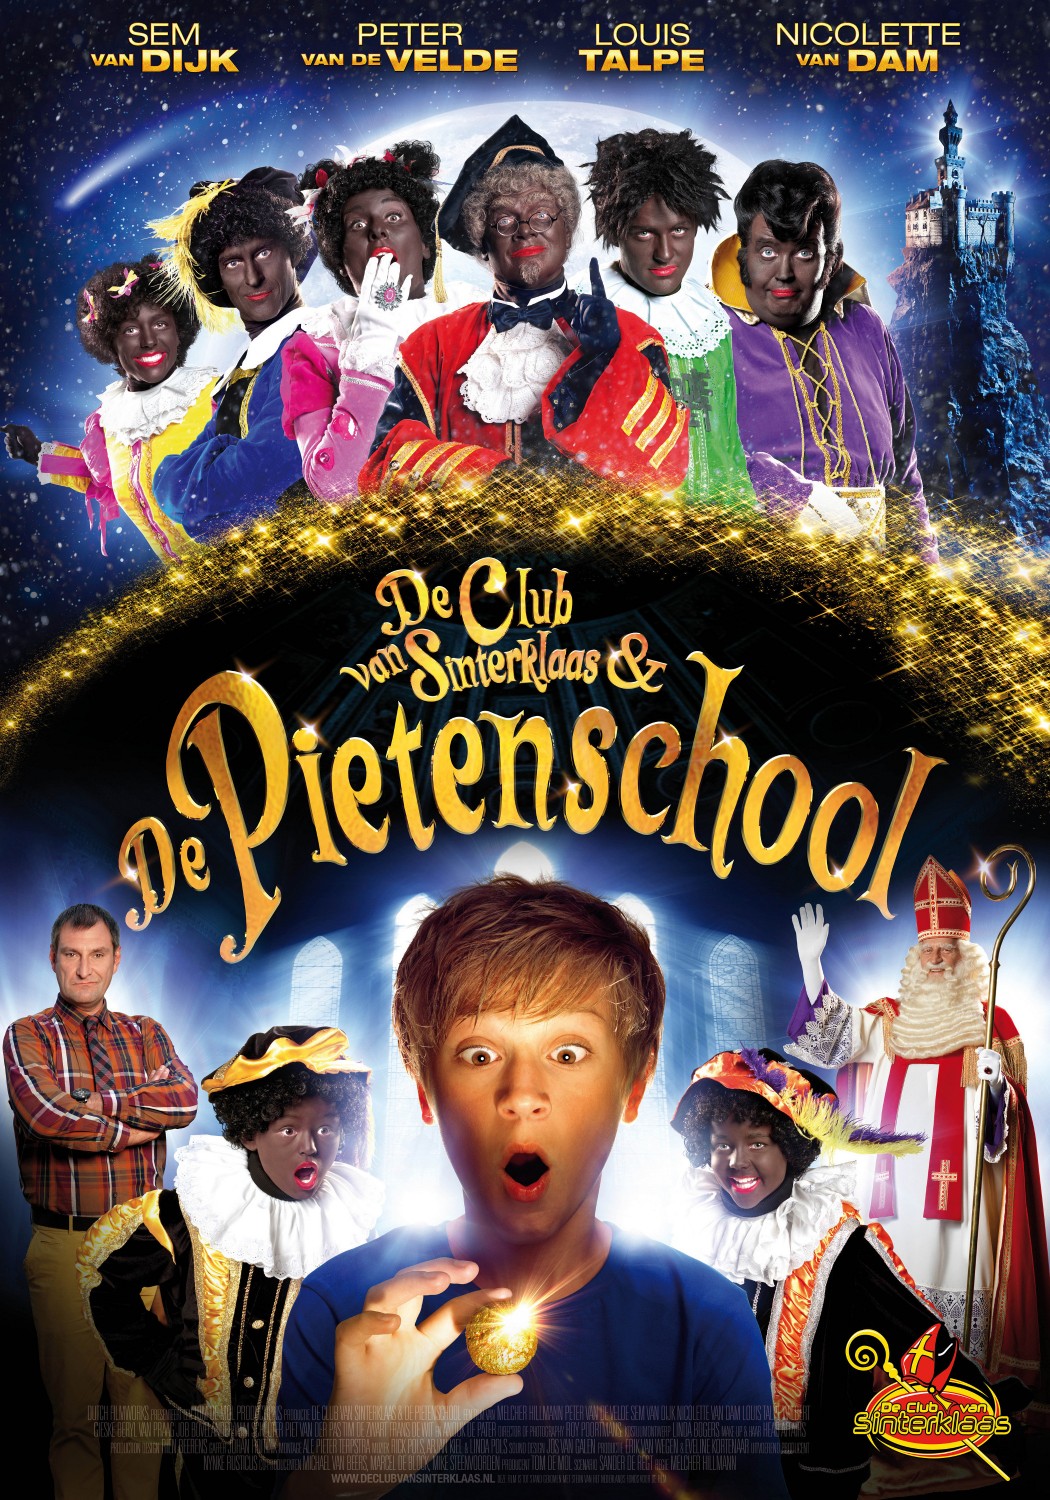 Extra Large Movie Poster Image for De Club van Sinterklaas & De Pietenschool 